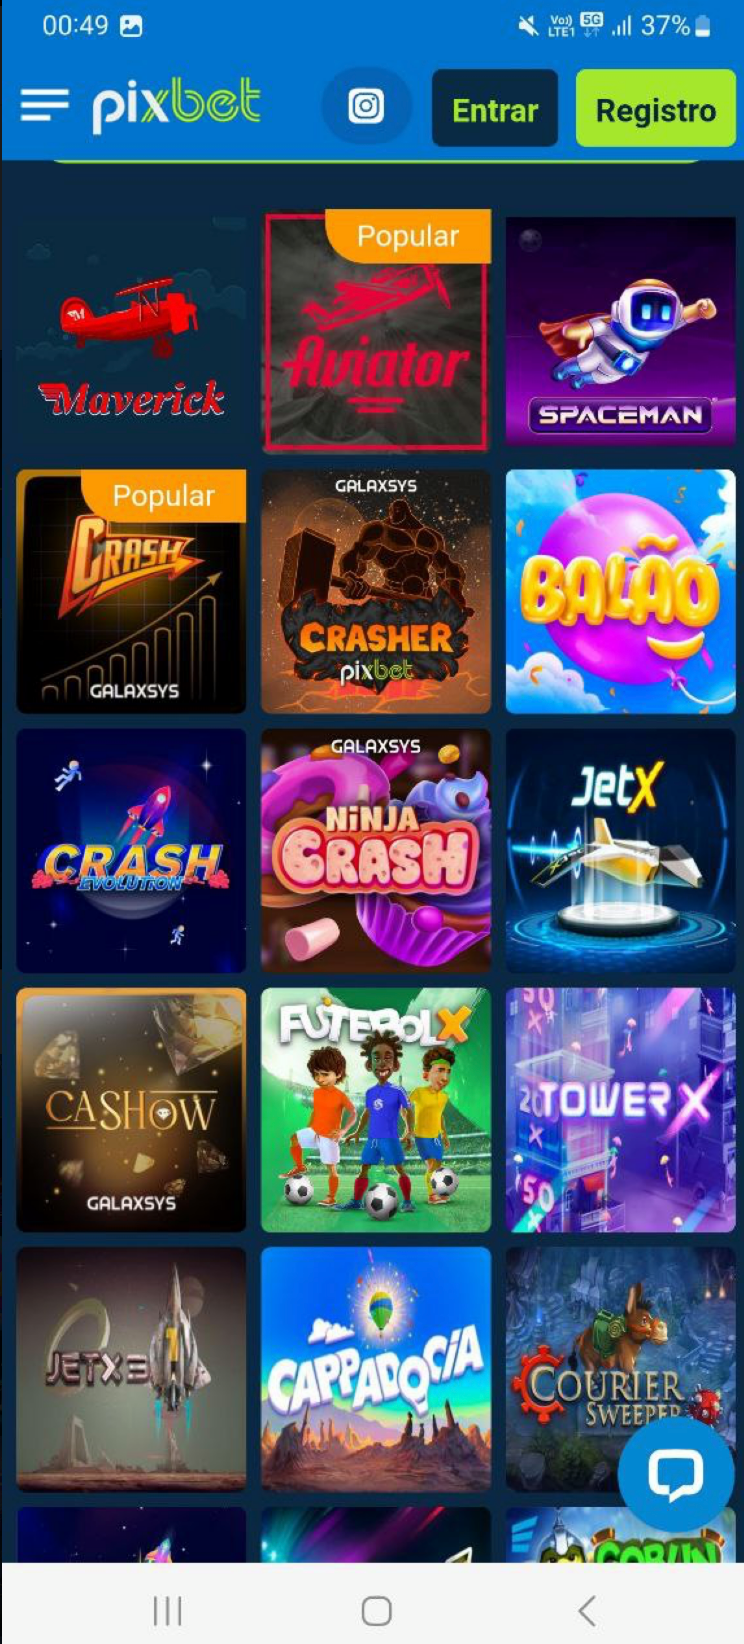 Crash Games no Pixbet App